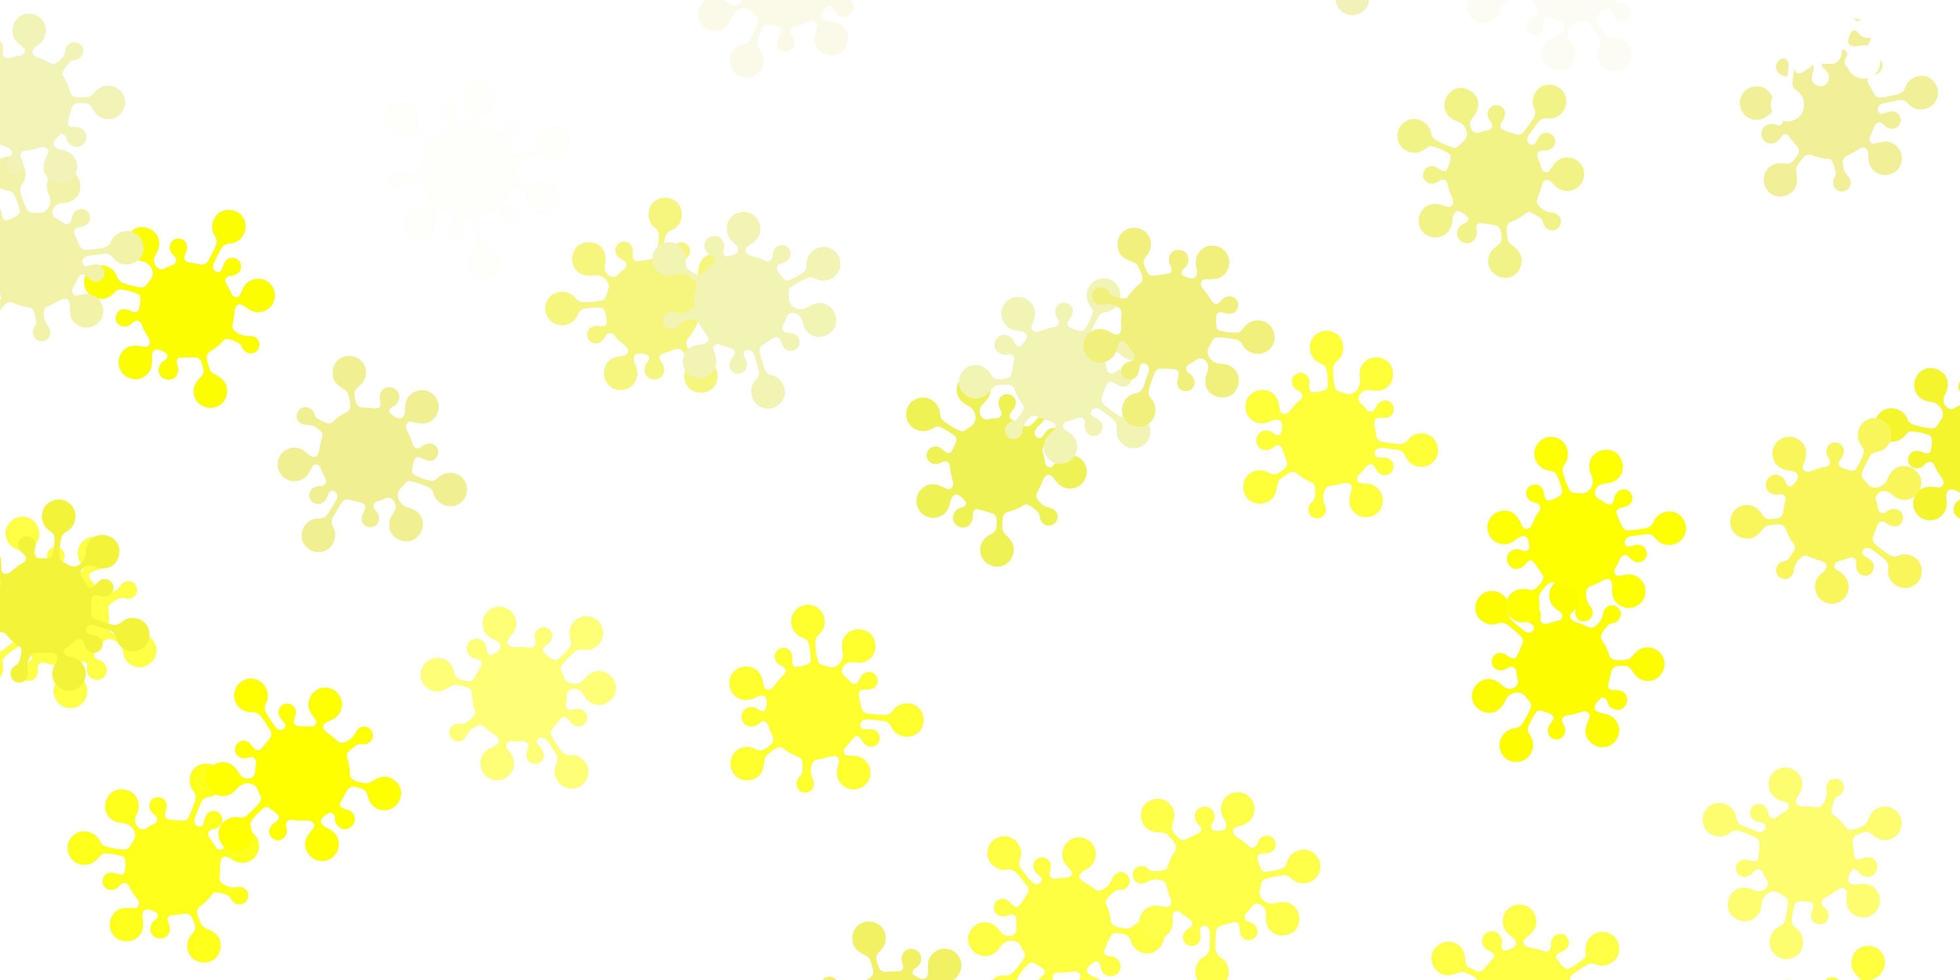 Fondo de vector amarillo claro con símbolos covid-19.